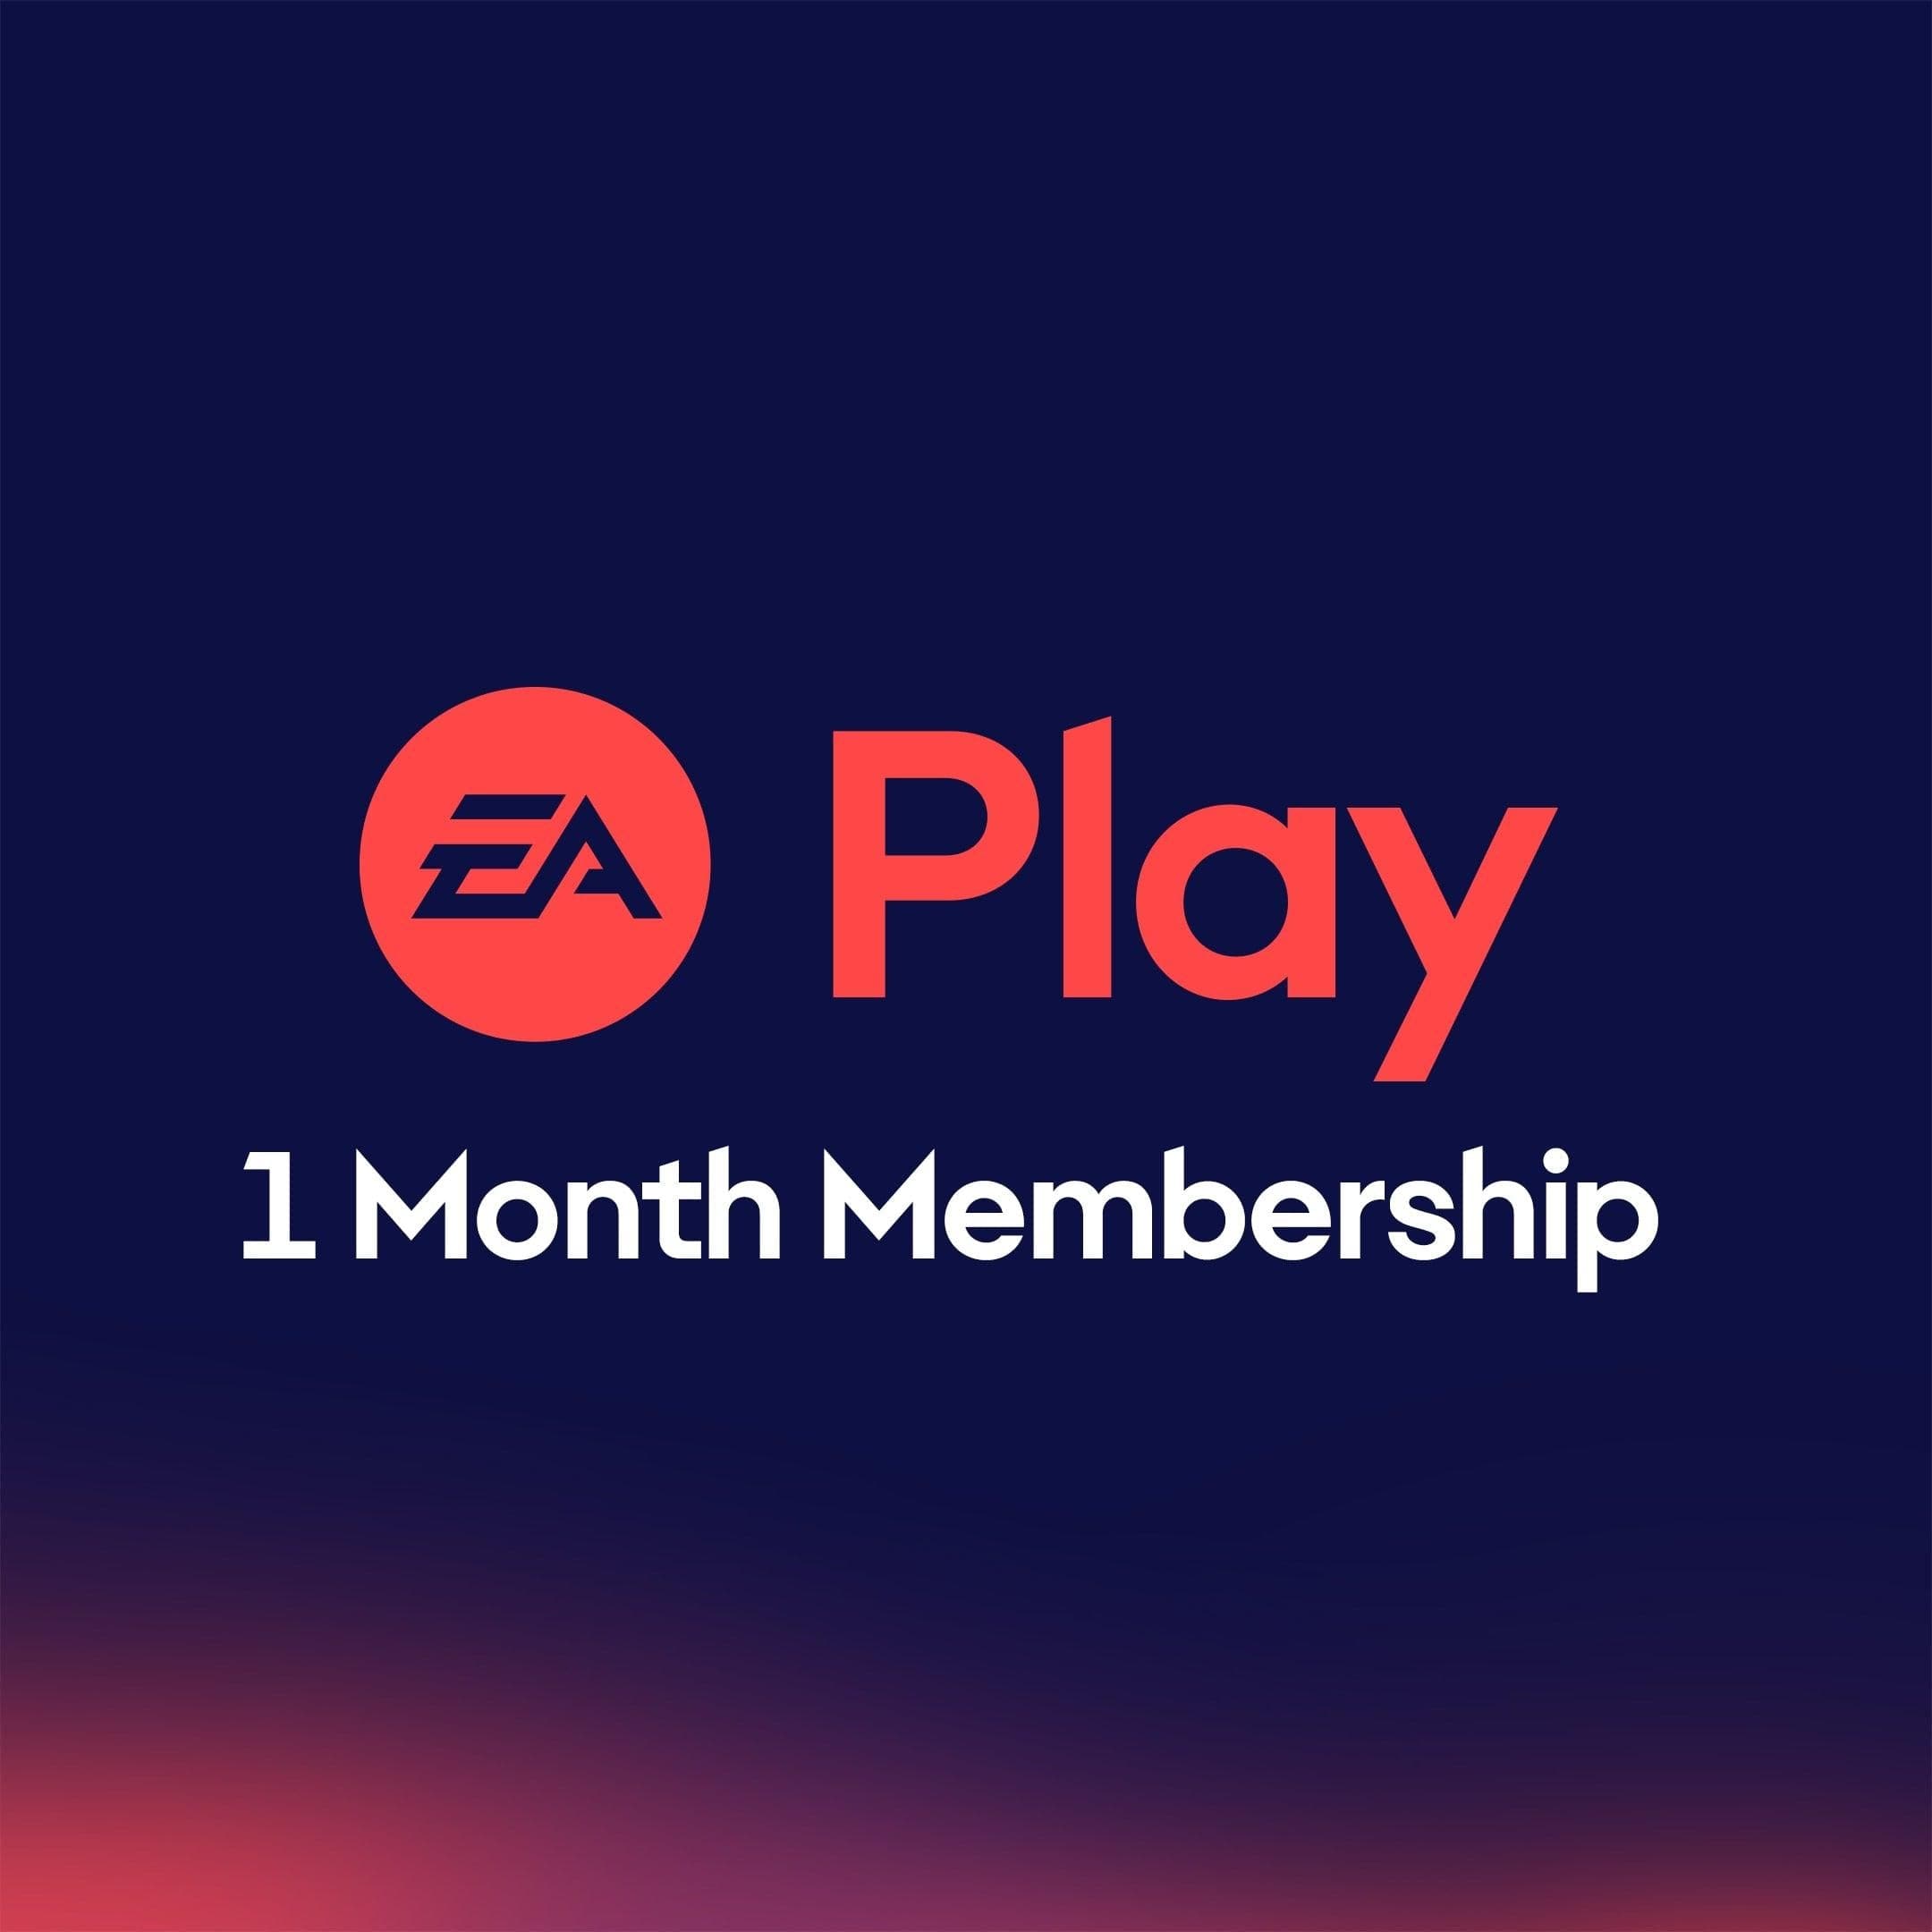 EA Play - Xbox מנוי ניסיון לחודש - EXON - גיימינג ותוכנות - משחקים ותוכנות למחשב ולאקס בוקס!